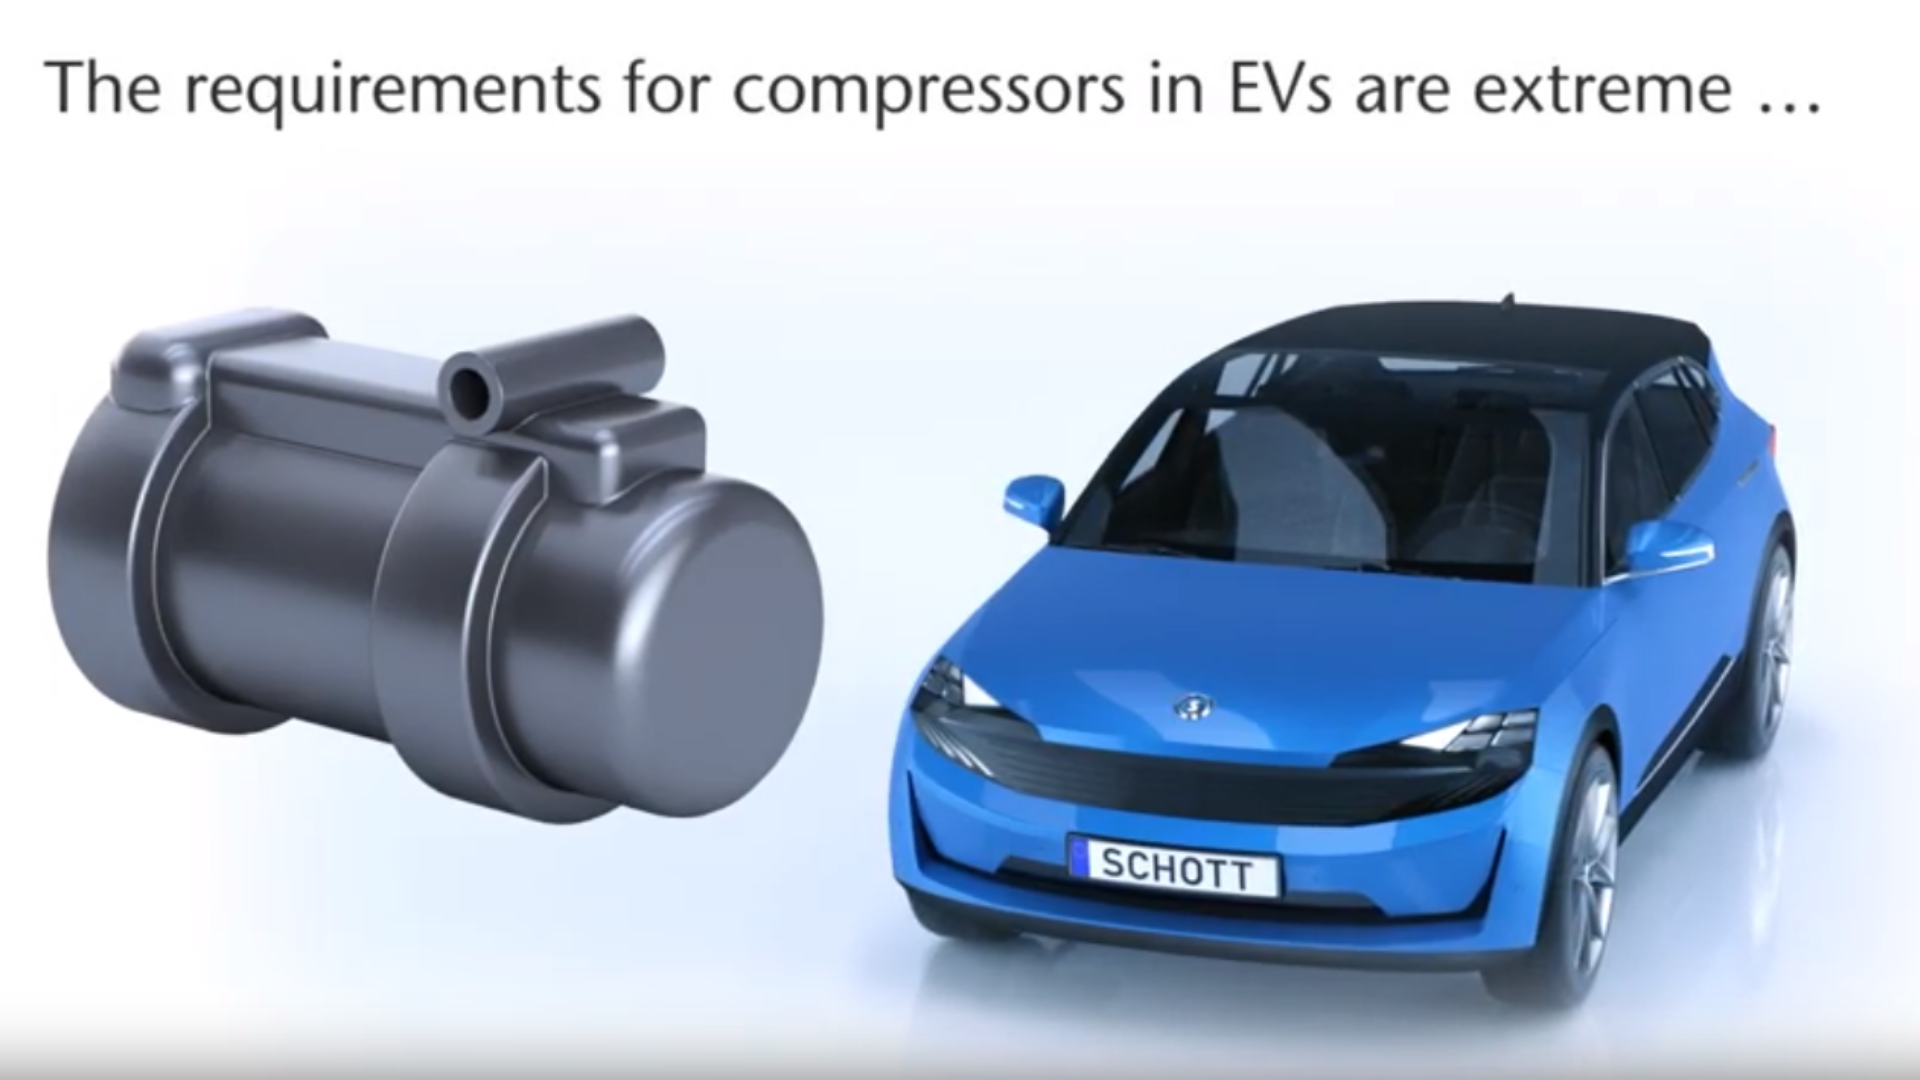 Clique para descobrir por que terminais de compressor de alta qualidade são tão importantes para sistemas de ar condicionado automotivos.